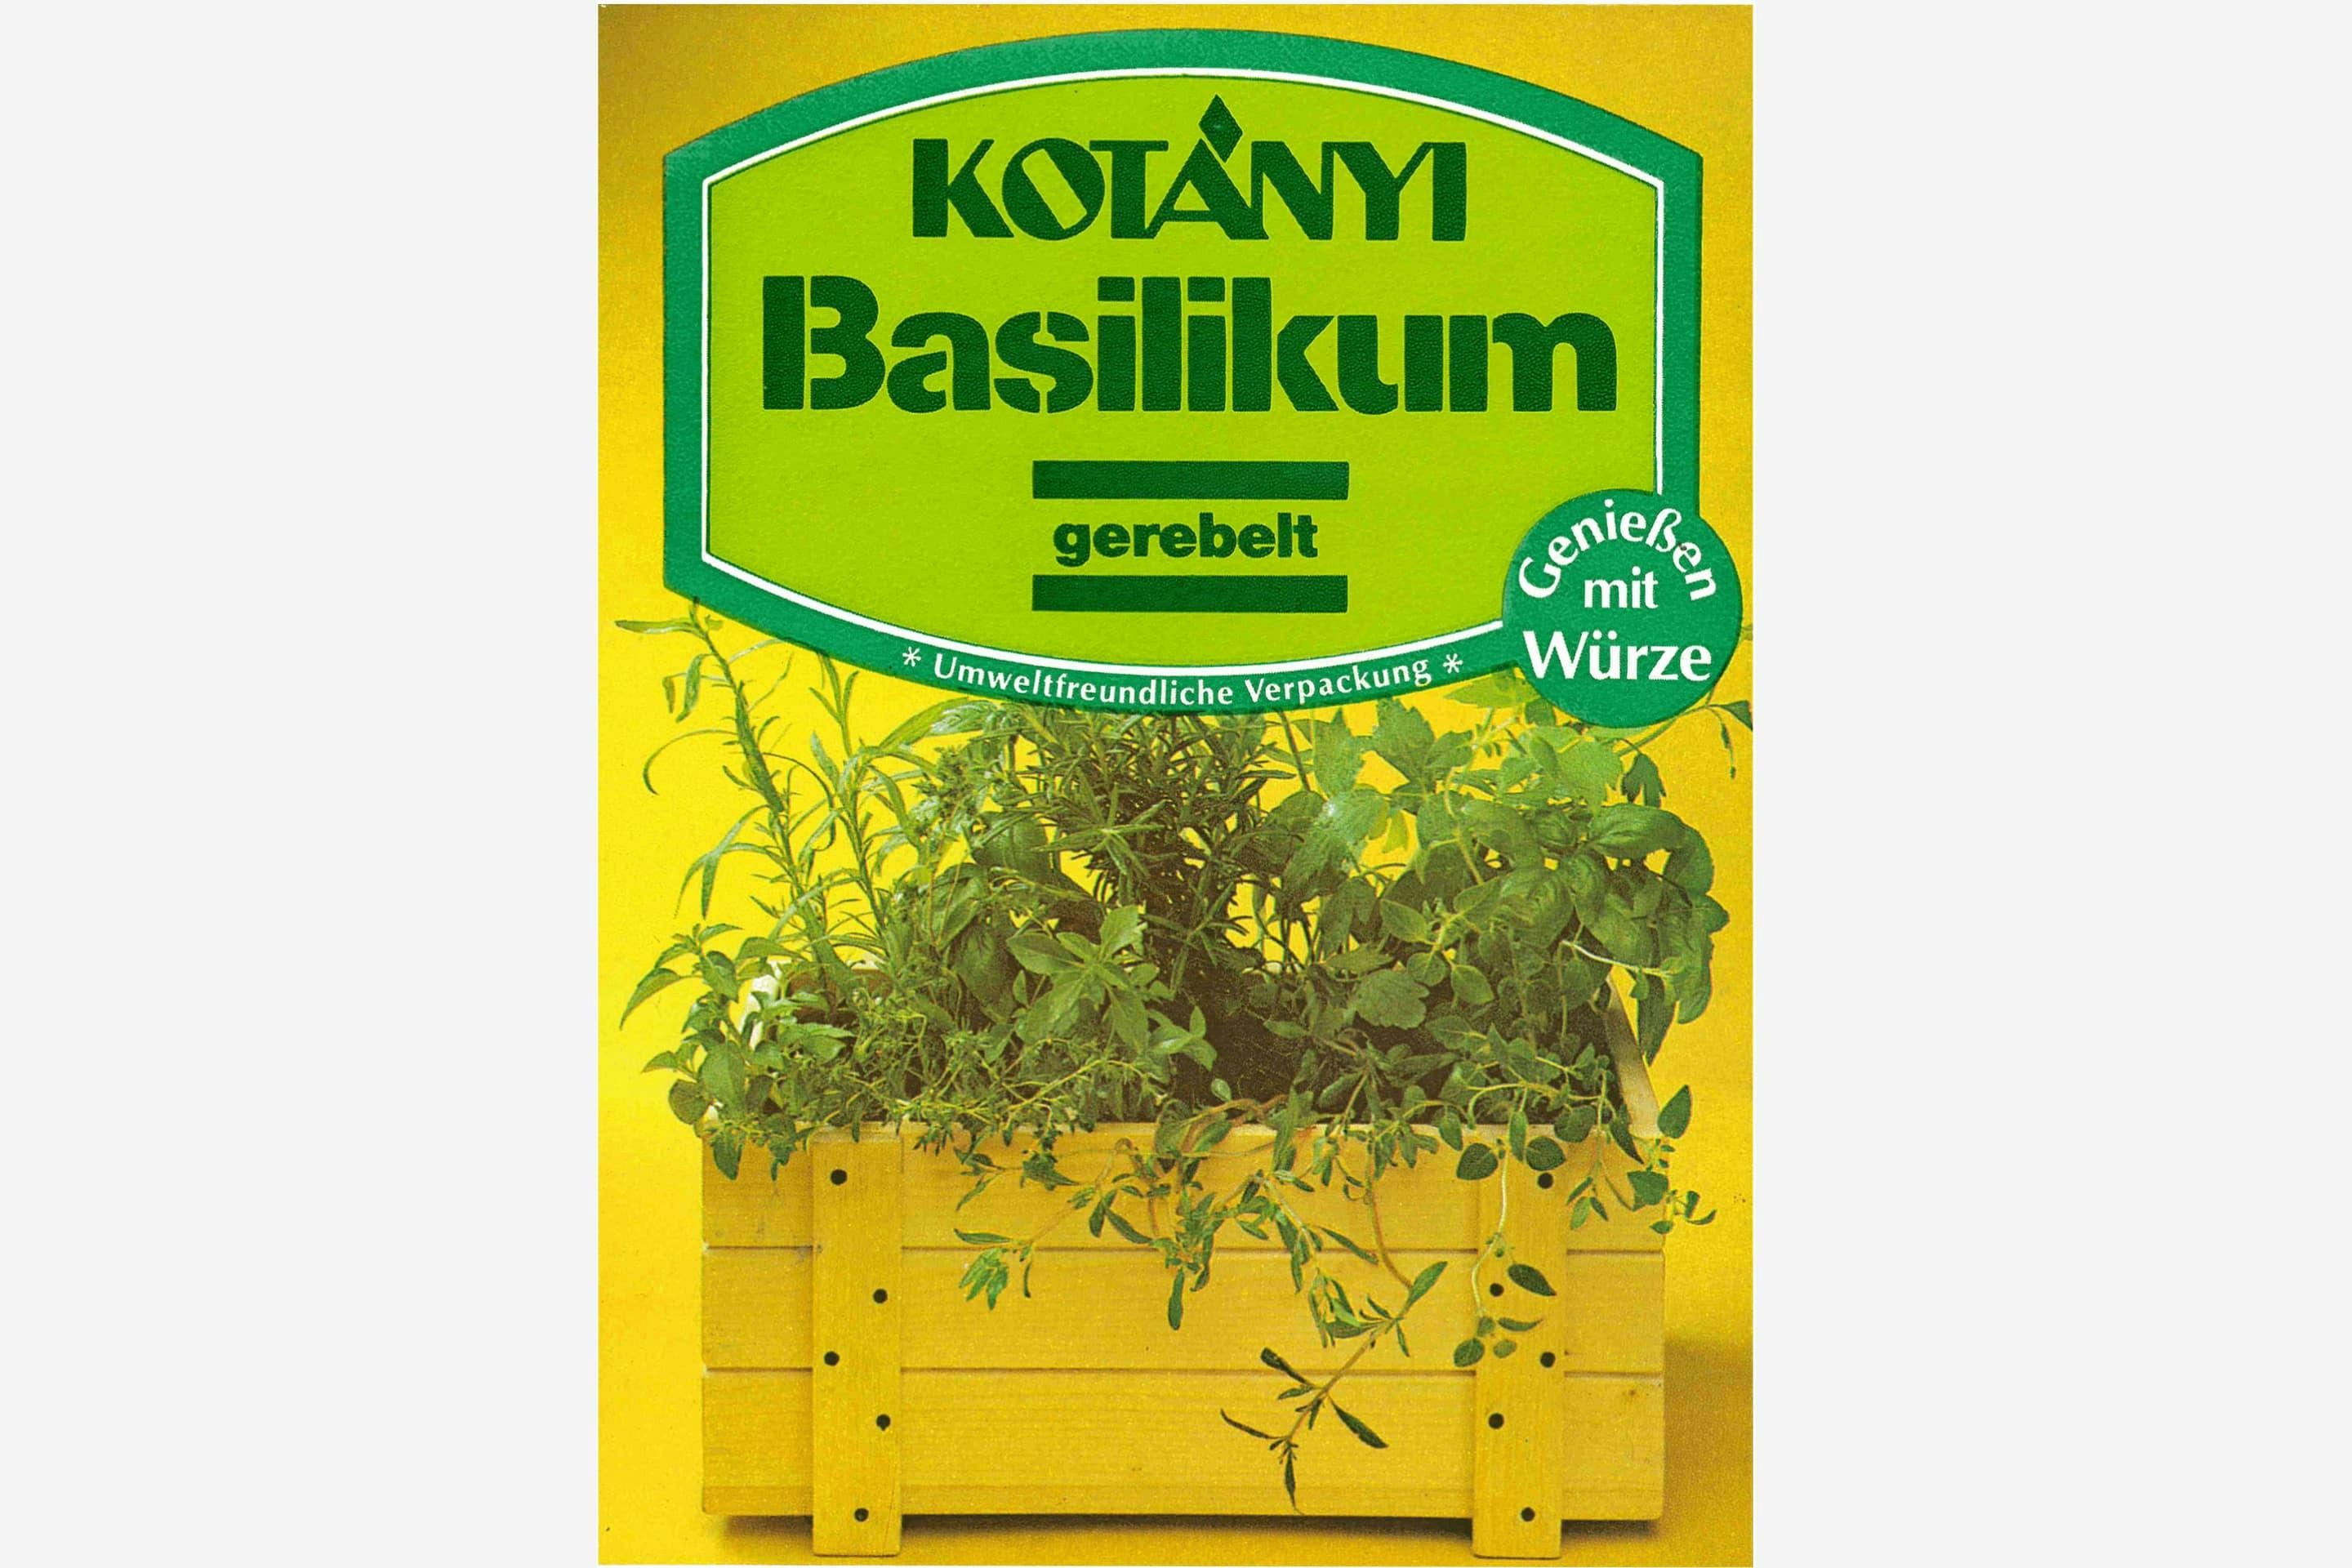 Ekološki prihvatljivo pakovanje Kotányi bosiljka iz 80-ih godina XX veka.